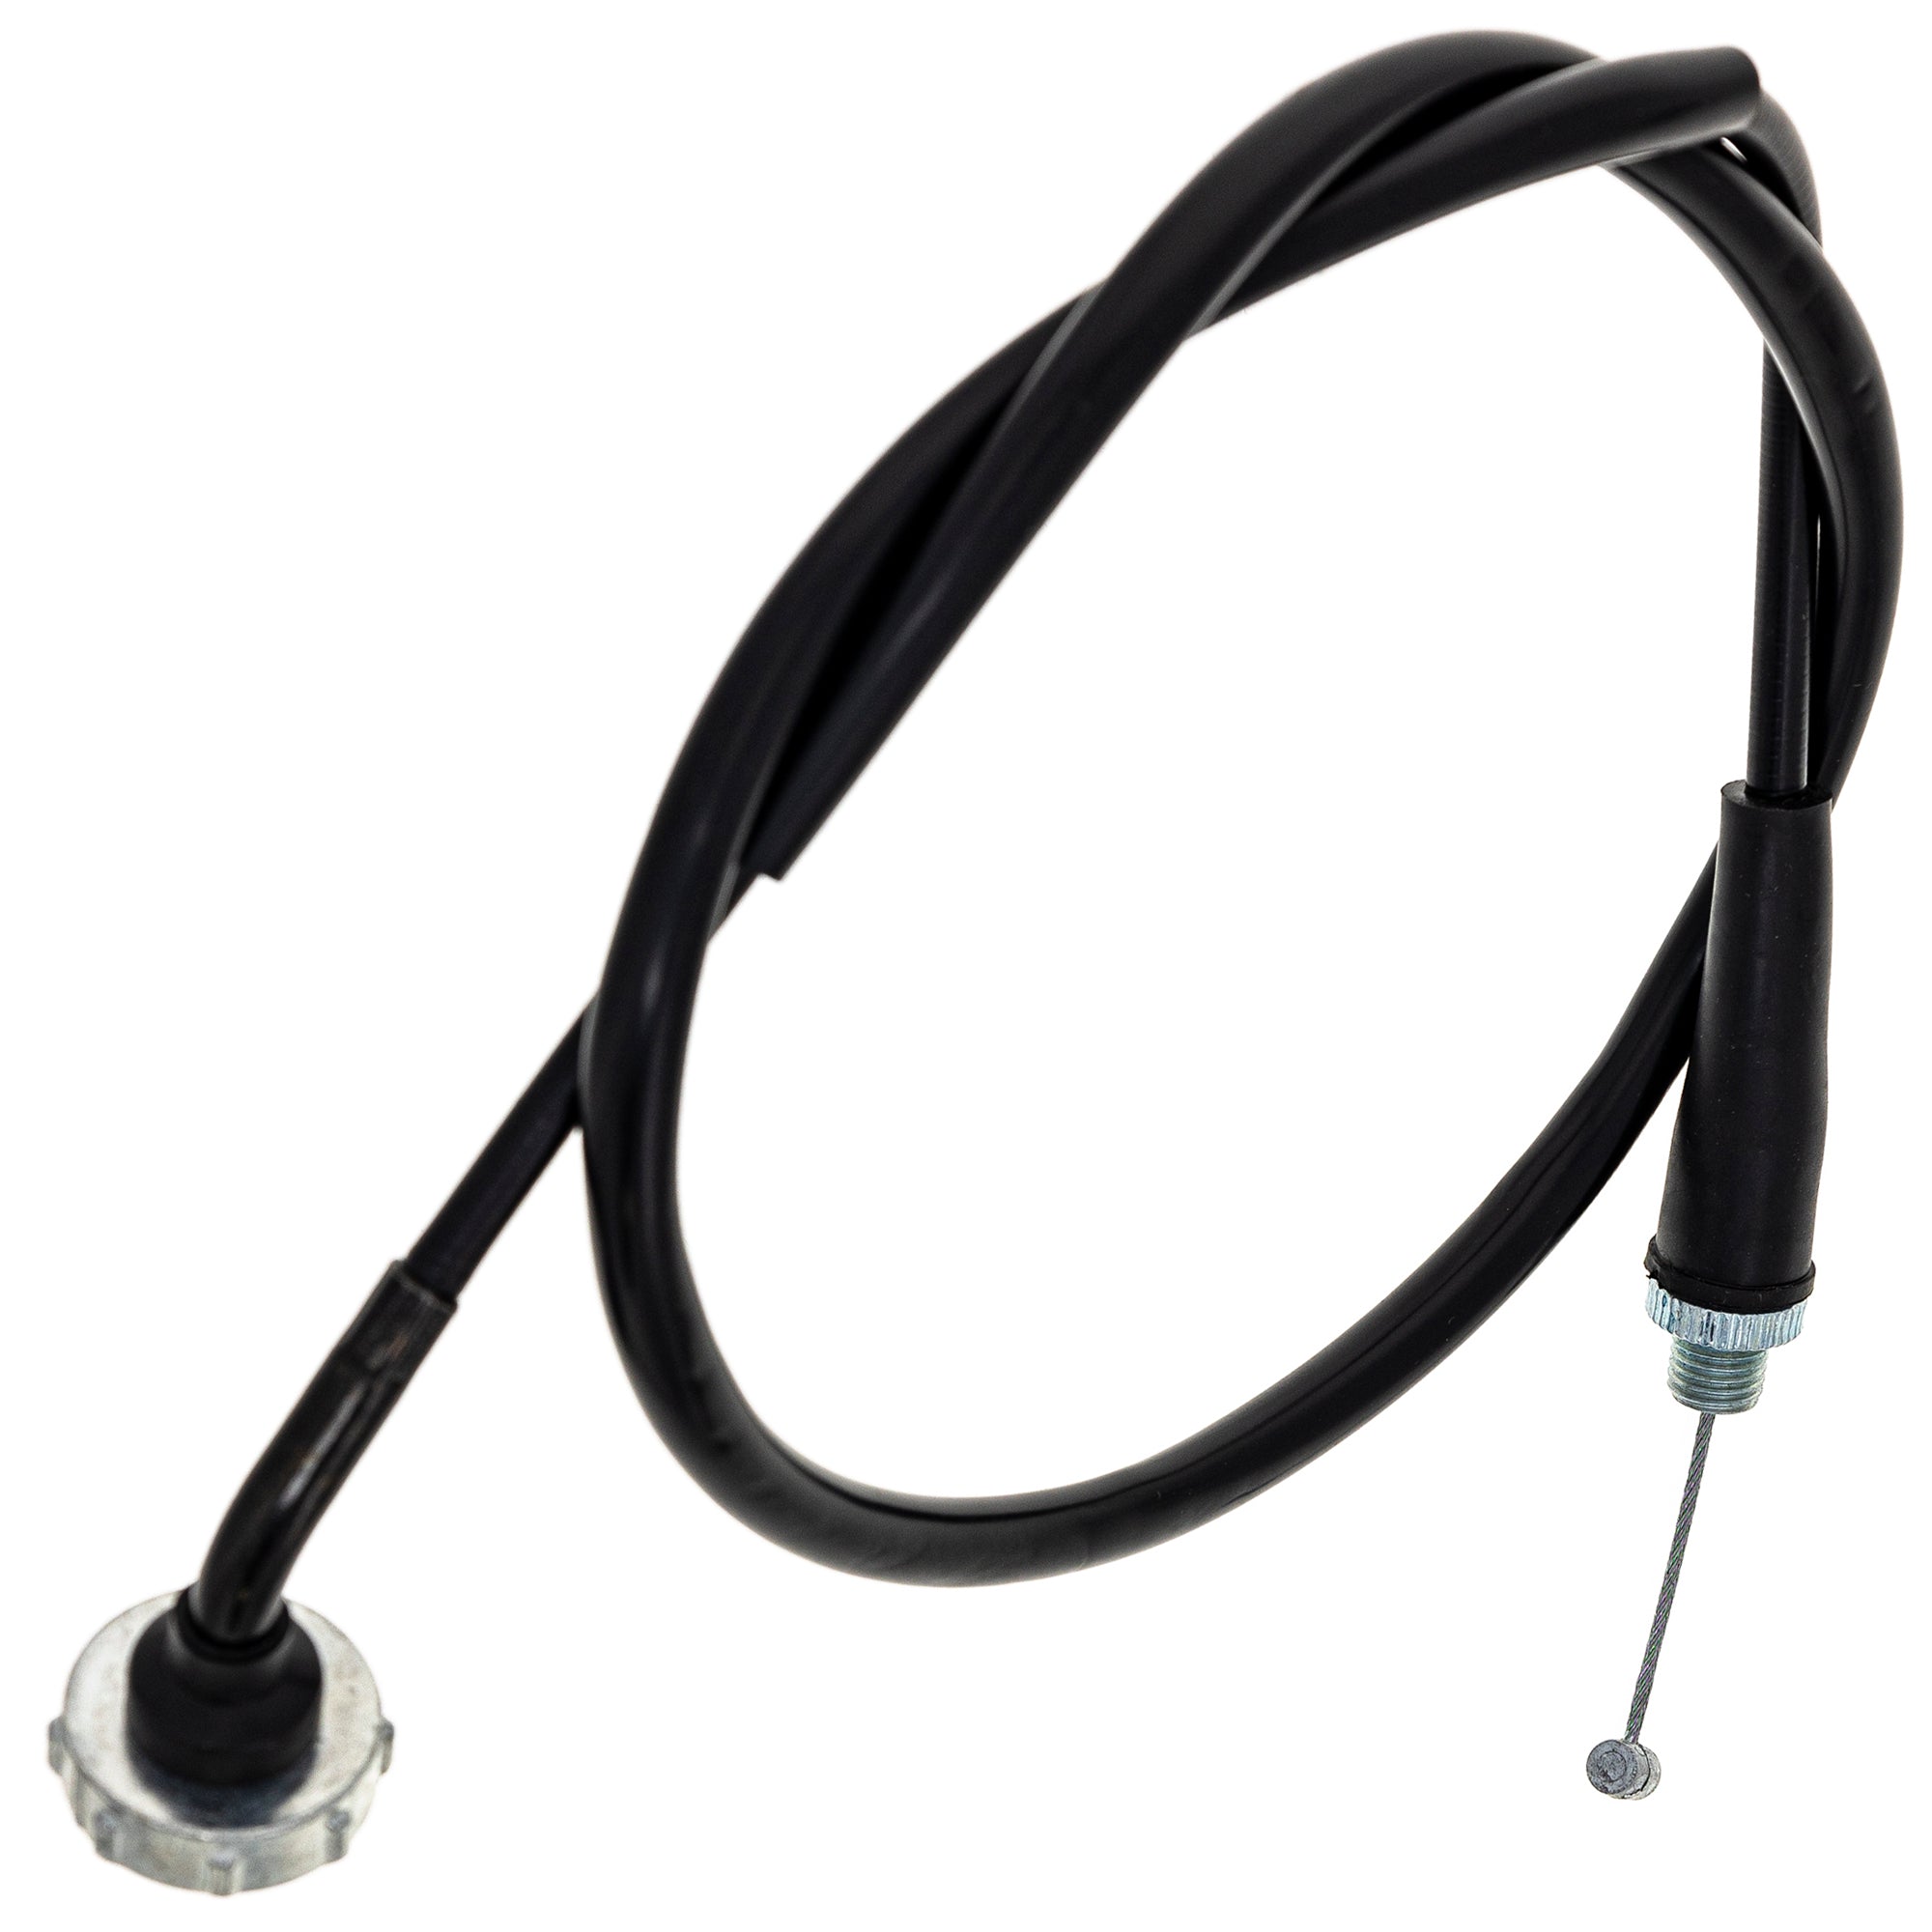 Throttle Cable For Honda 17920-VM6-315 17920-VM6-305 17920-HB6-315 17920-HB6-305